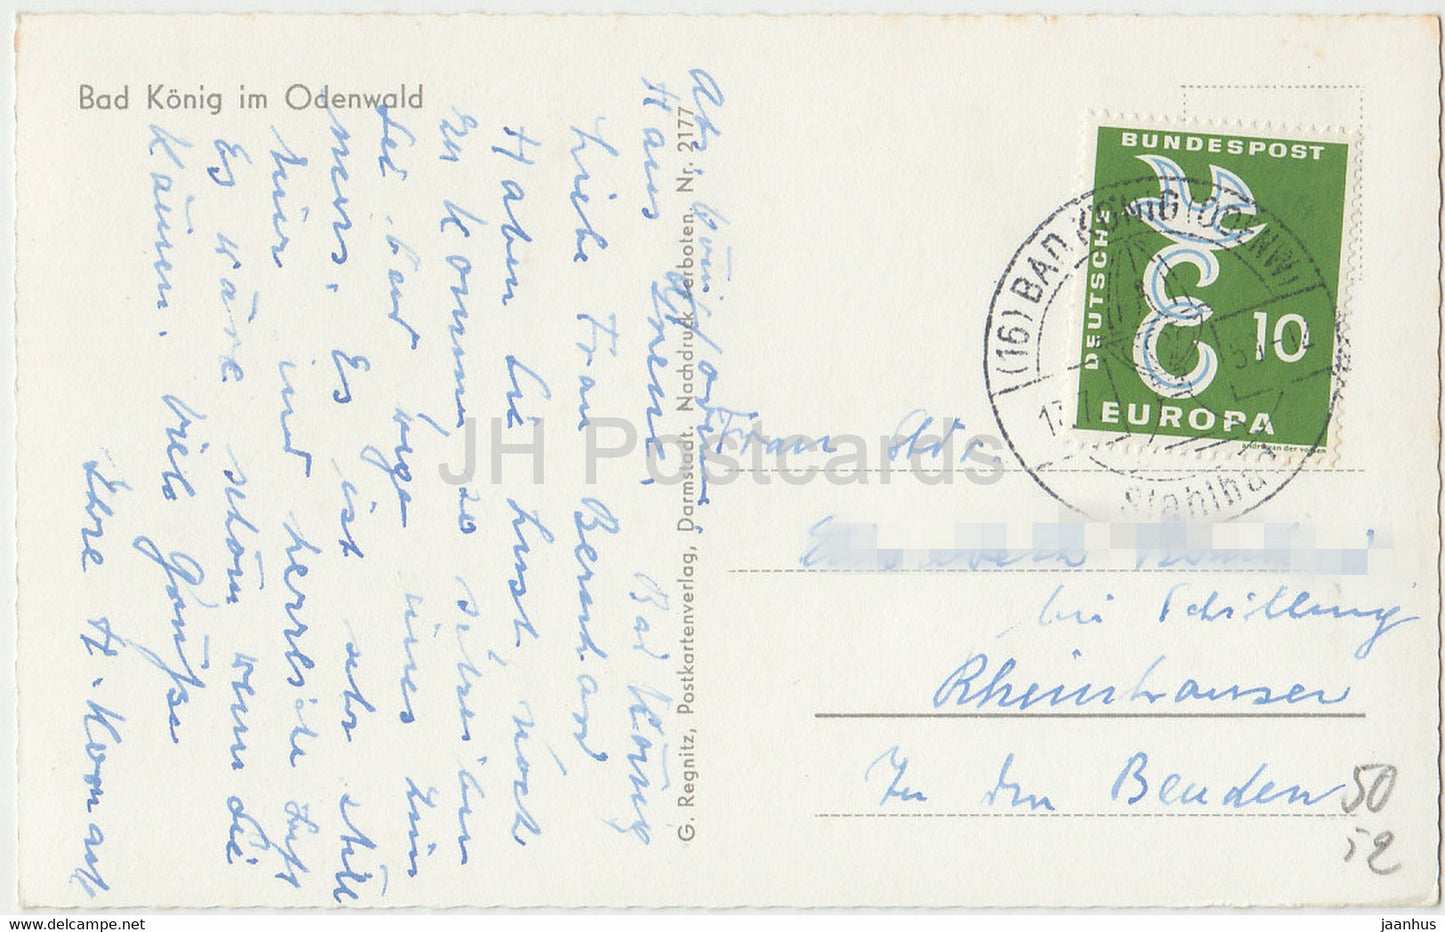 Bad Konig im Odenwald - 2177 - carte postale ancienne - années 1950 - Allemagne - utilisé